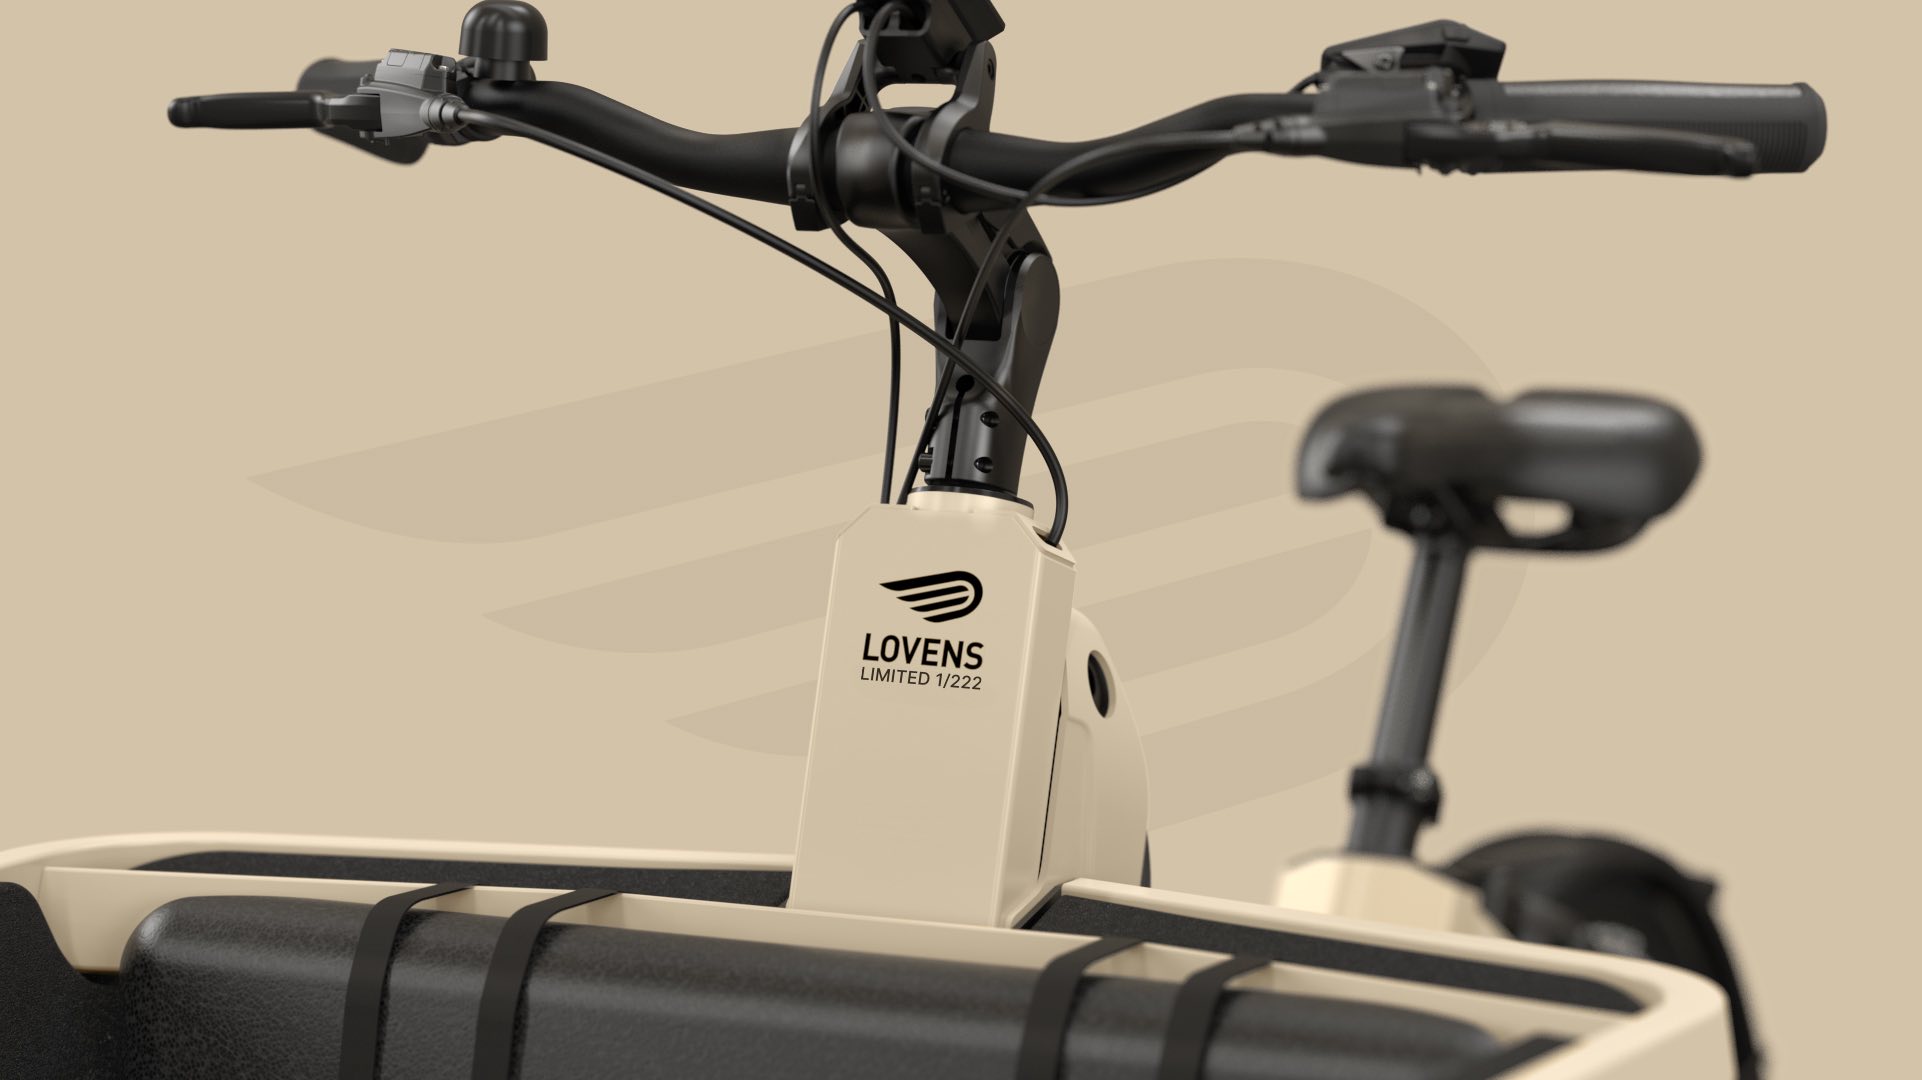 lovens-explorer-s75-bakfiets-limited-edition-fietskar.nl-5